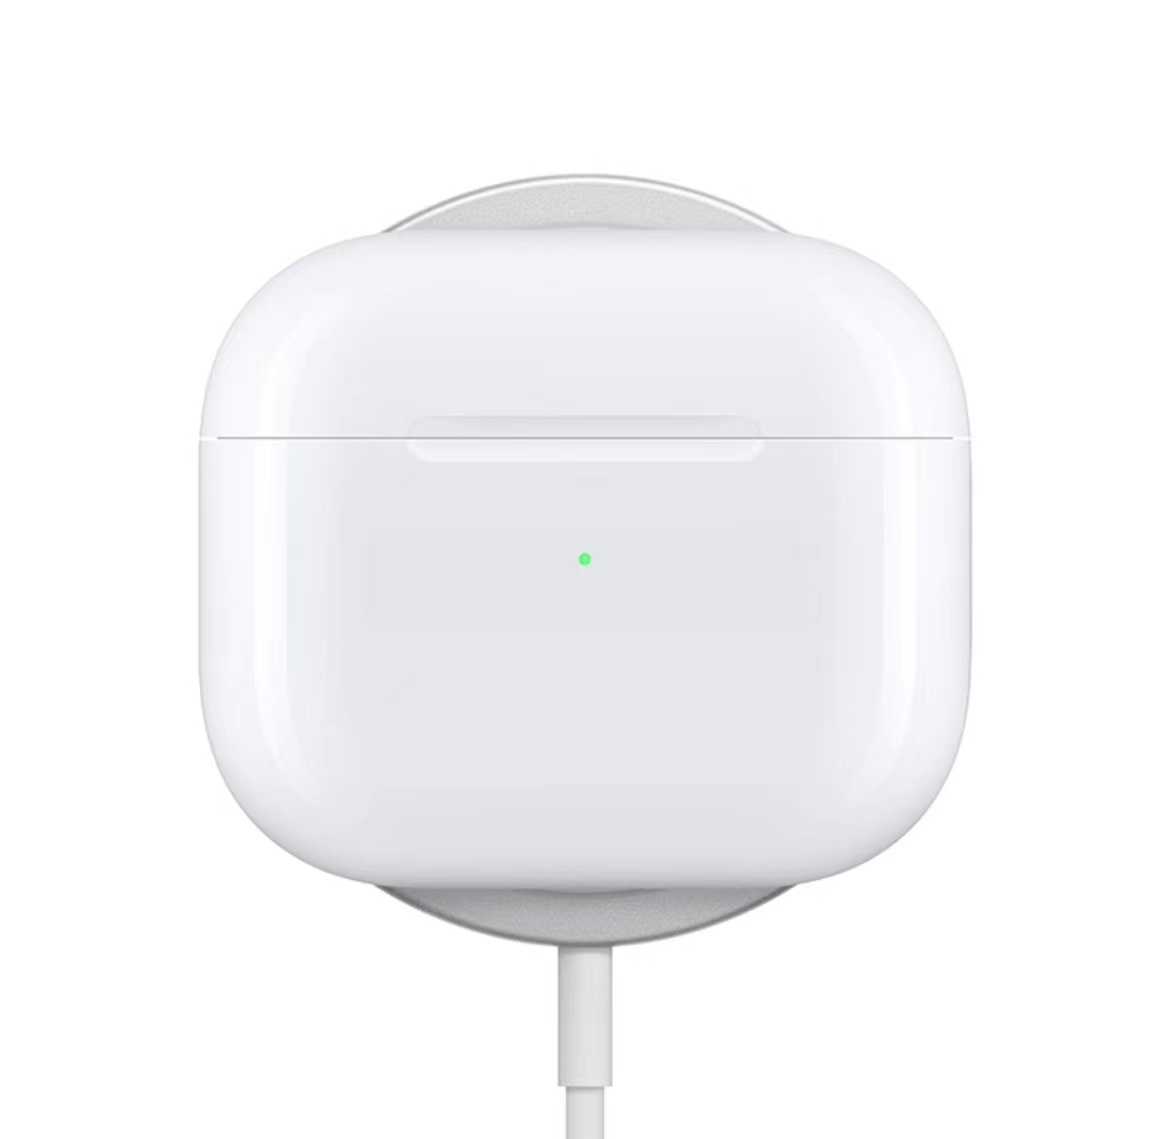 Apple AirPods Pro (第二代) 搭配 MagSafe 充電盒 (USB-C) 無線藍牙耳機1